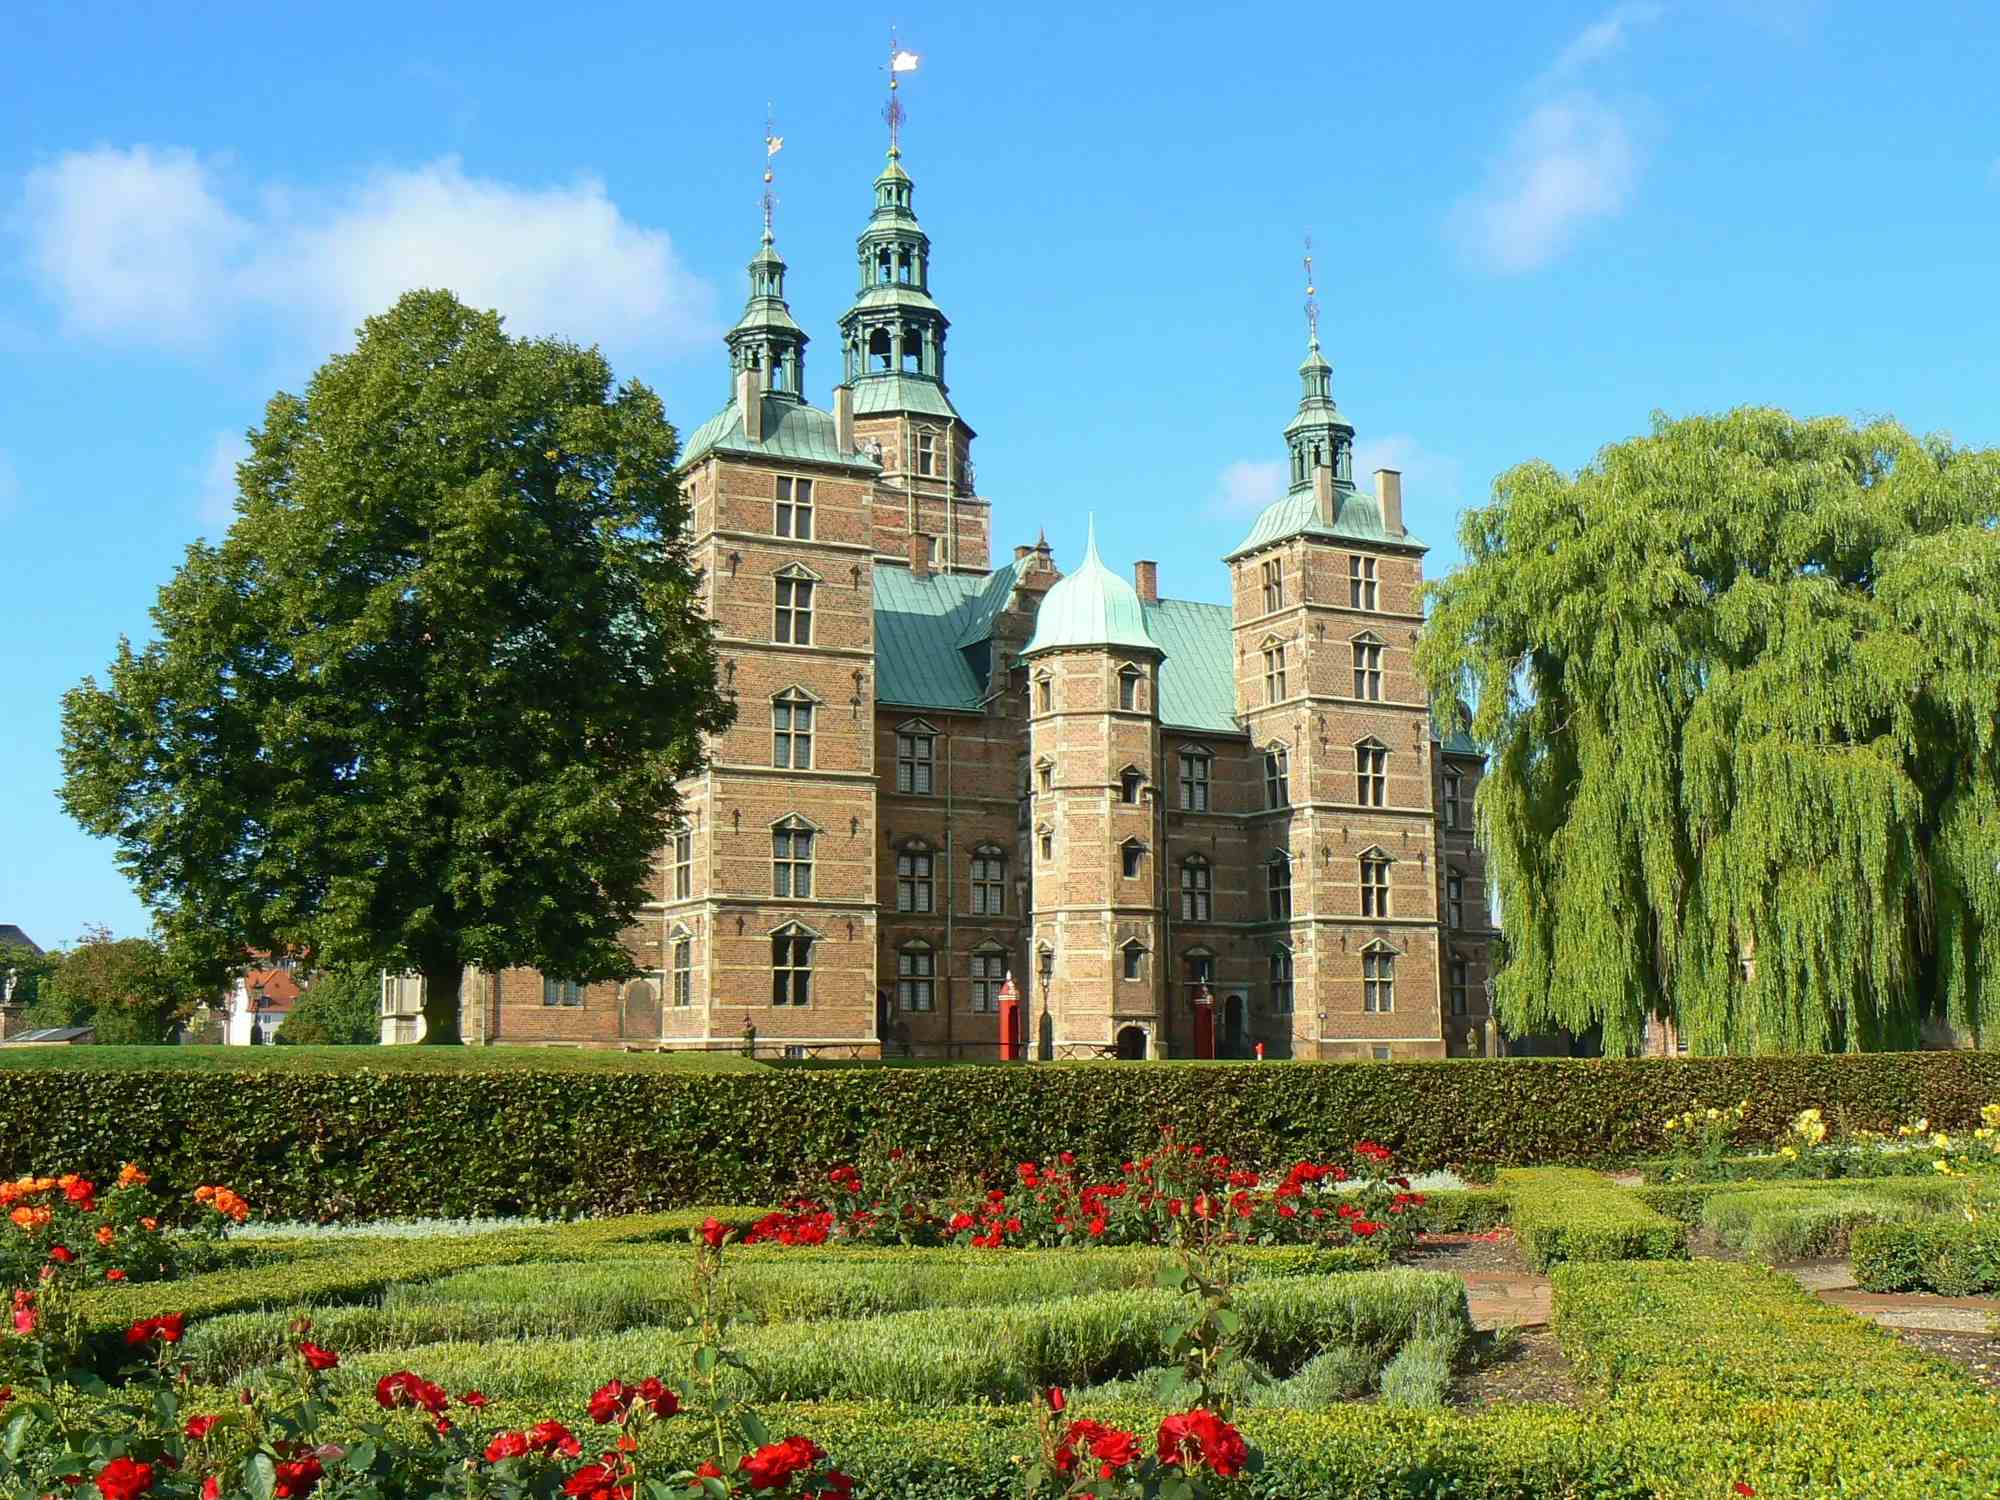 罗森堡城堡 image